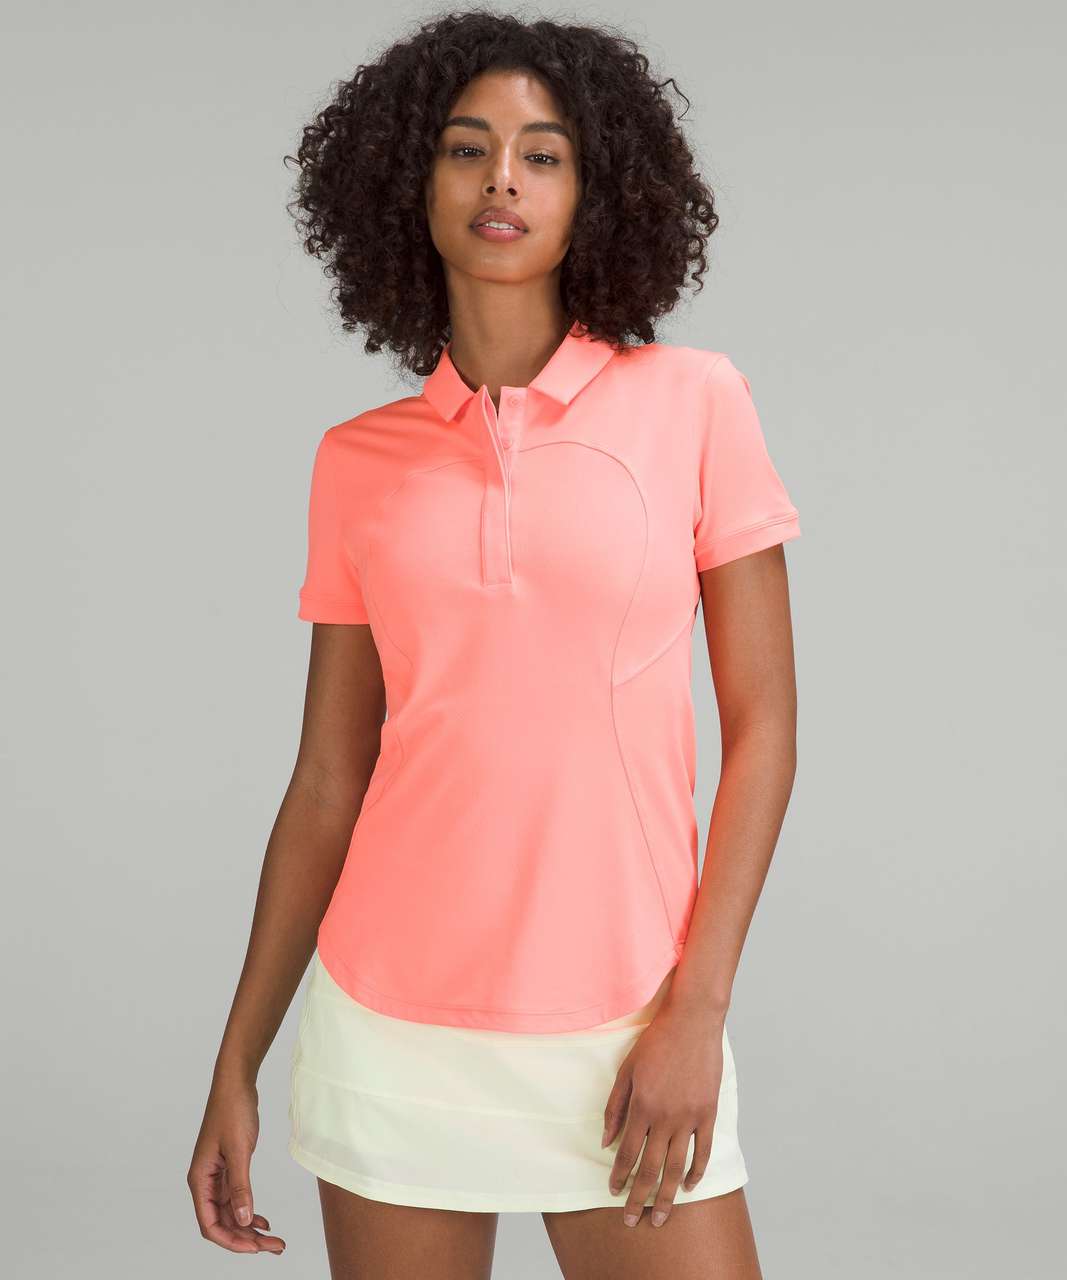 Lululemon Quick-Dry Short Sleeve Polo Shirt - Sunset